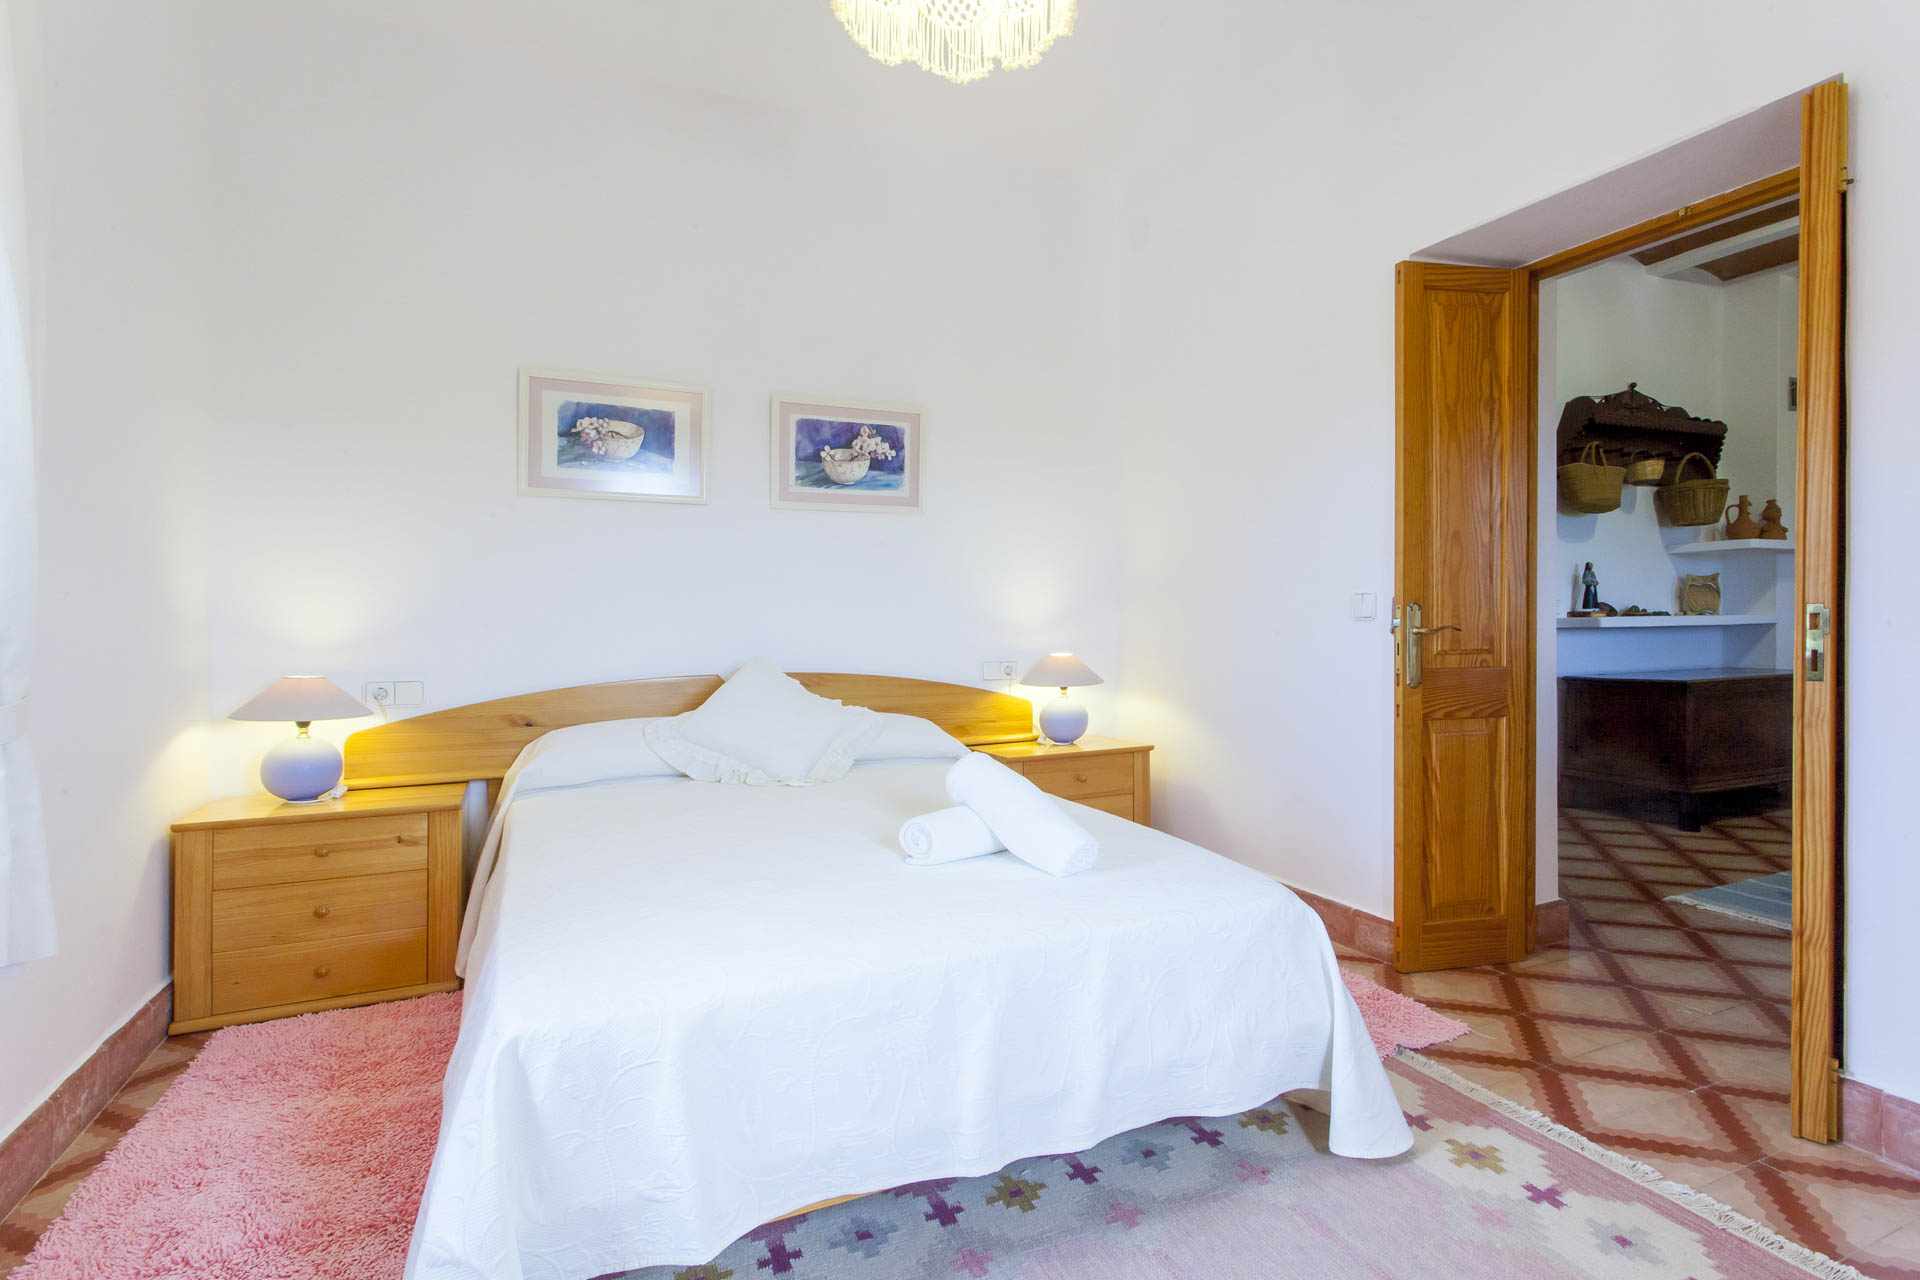 Habitación cama matrimonio en una villa en Ibiza